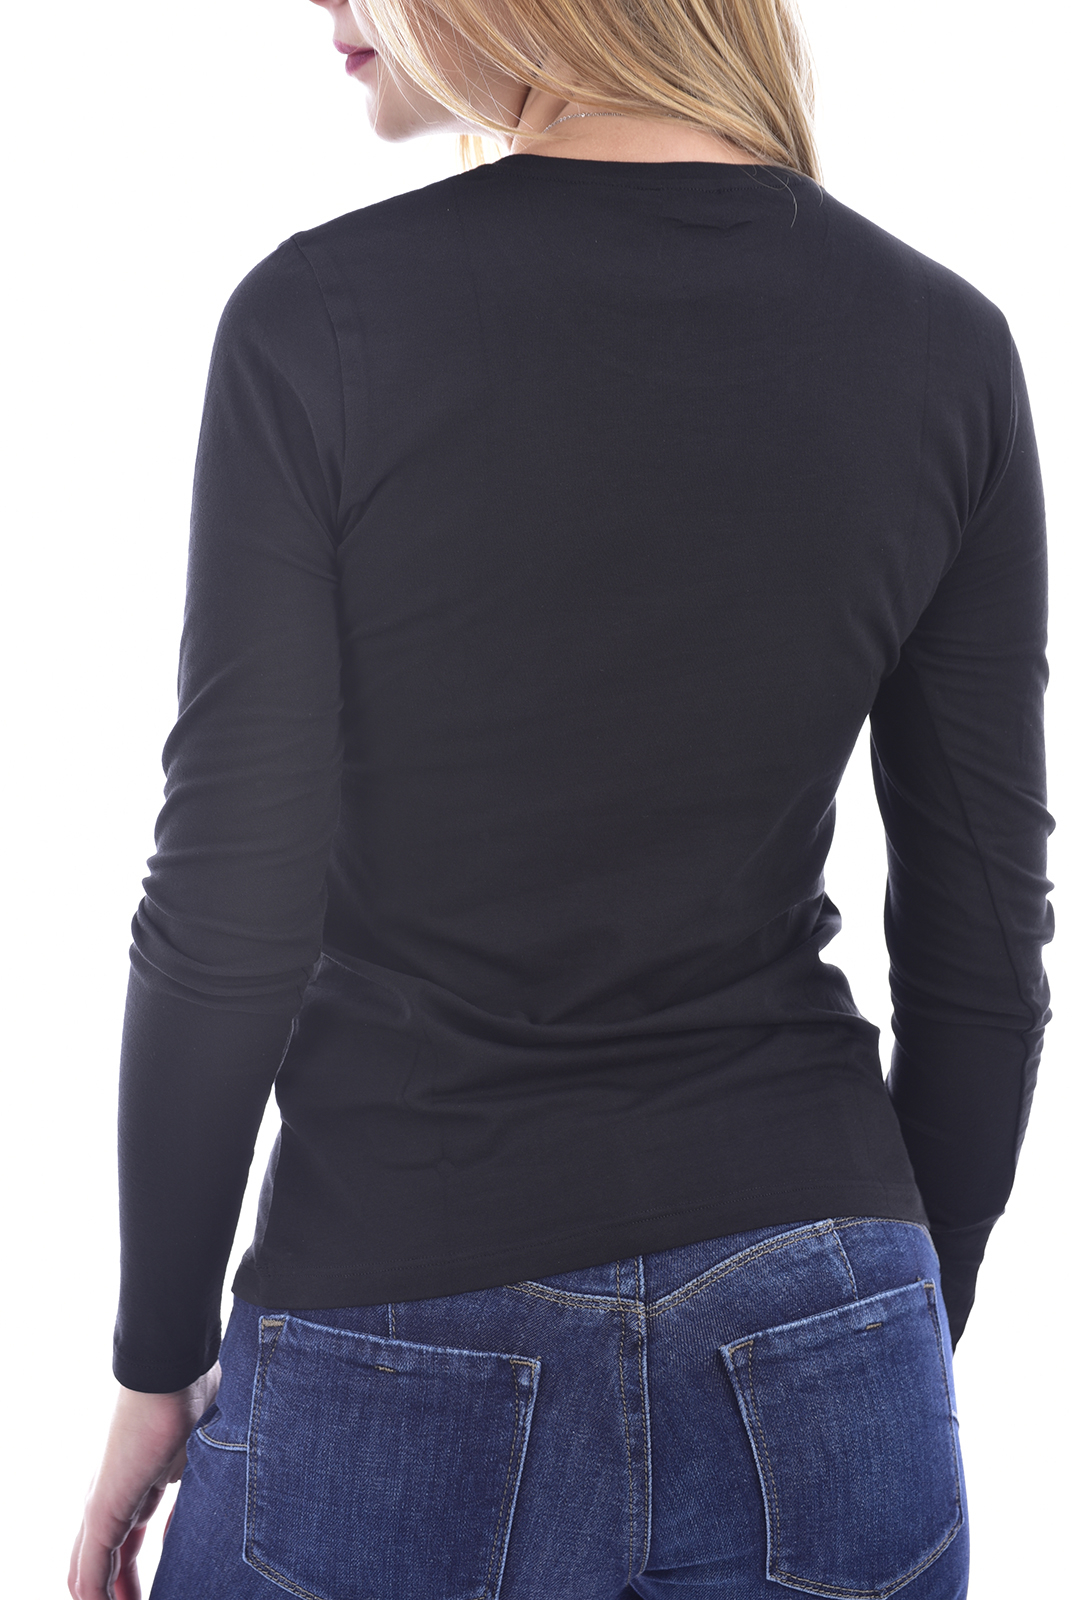 Tee-shirt d'hiver noir à manches longues Emporio Armani - 163229